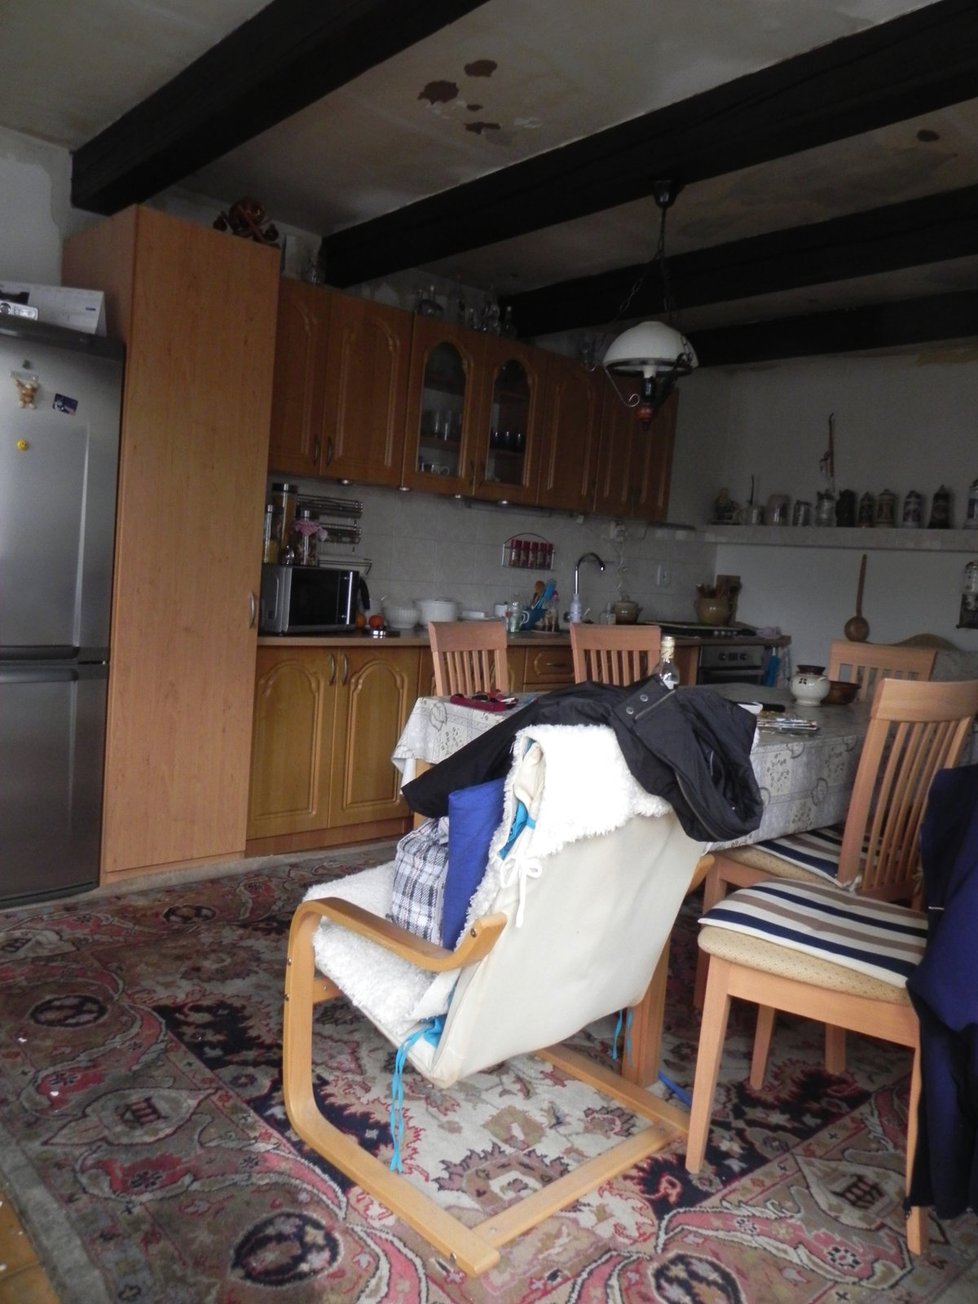 Obraz zkázy: Zcela promočený strop nad kuchyní